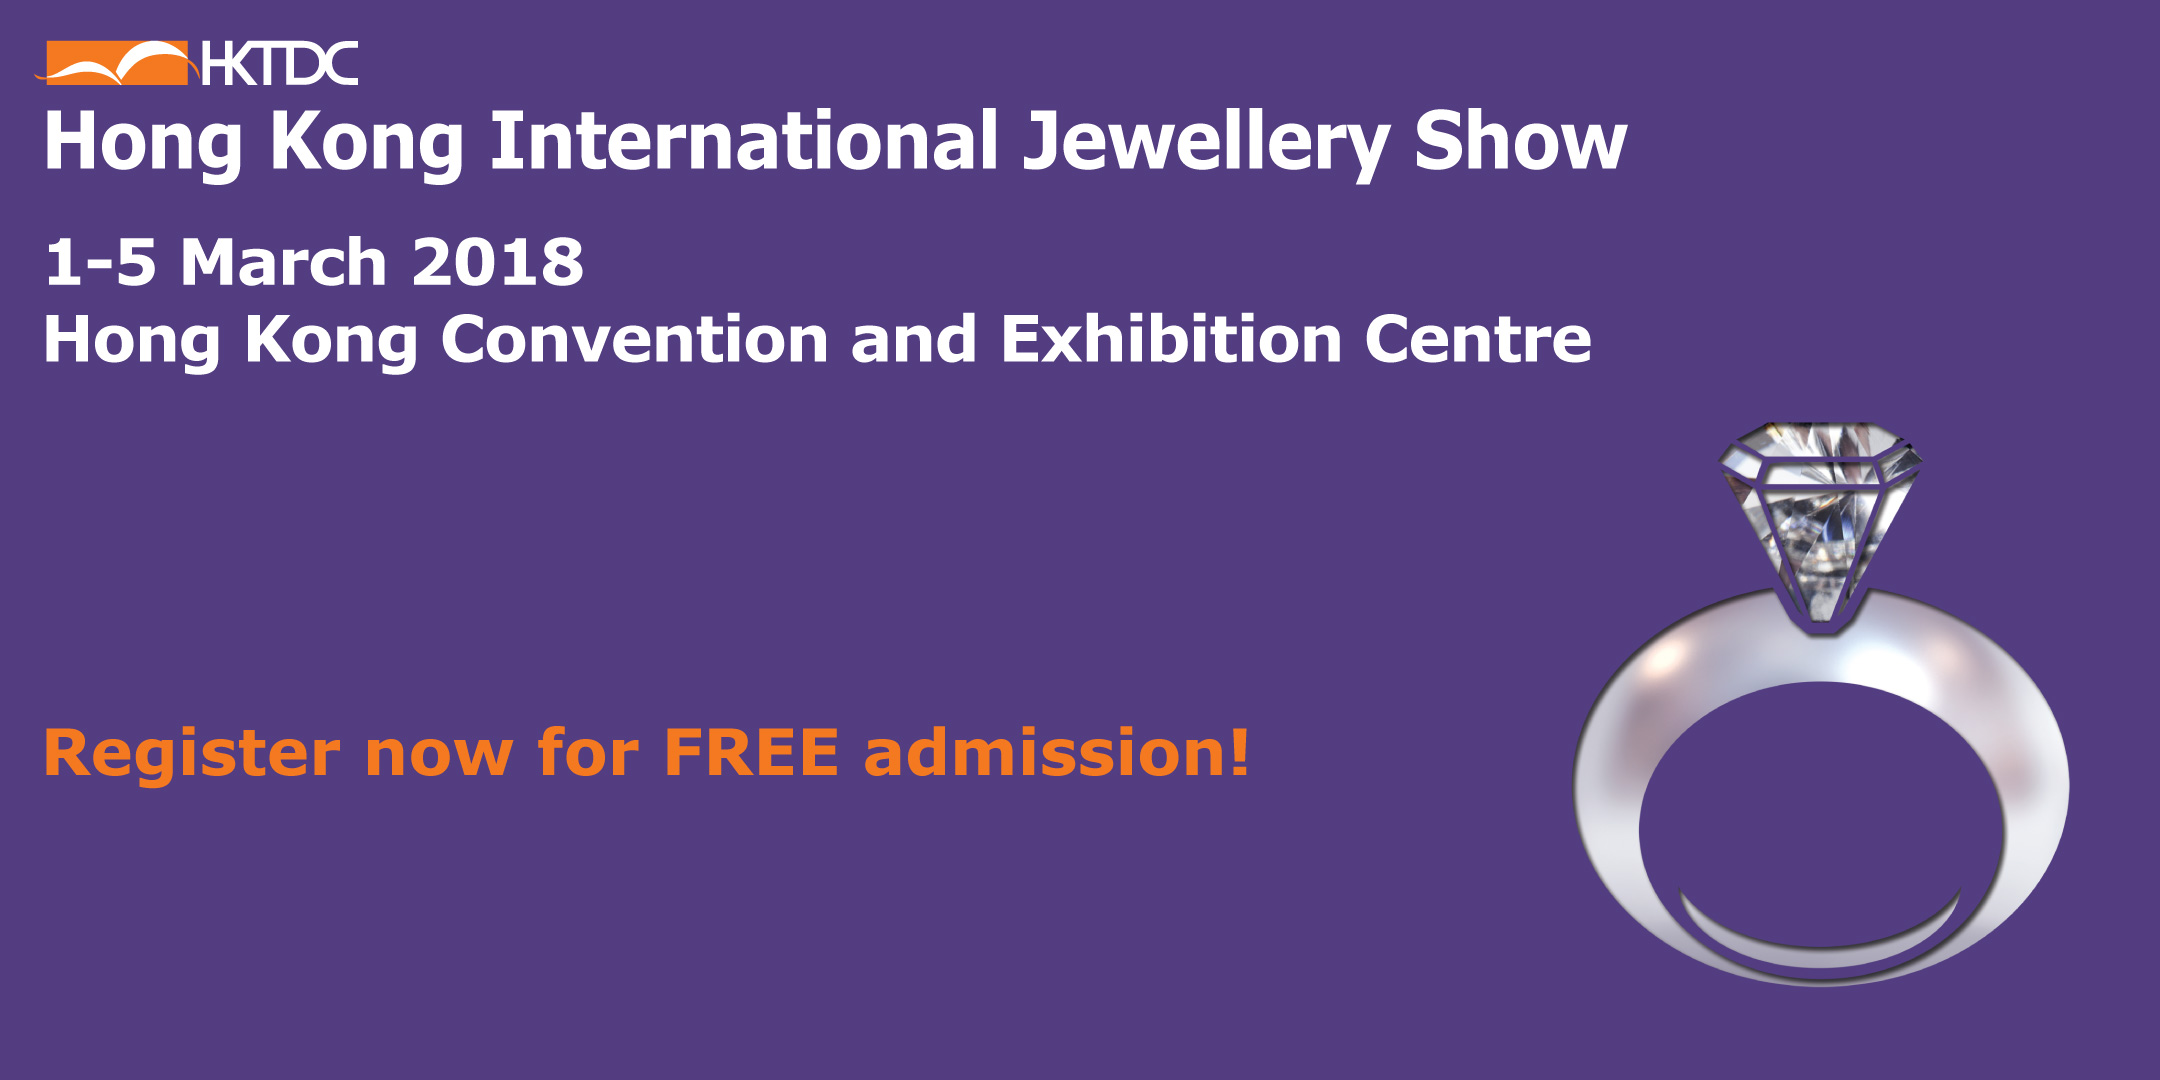 HKTDC Hong Kong International Jewellery Show, Hong Kong Convention and Exhibition Centre, Hong Kong, Hong Kong